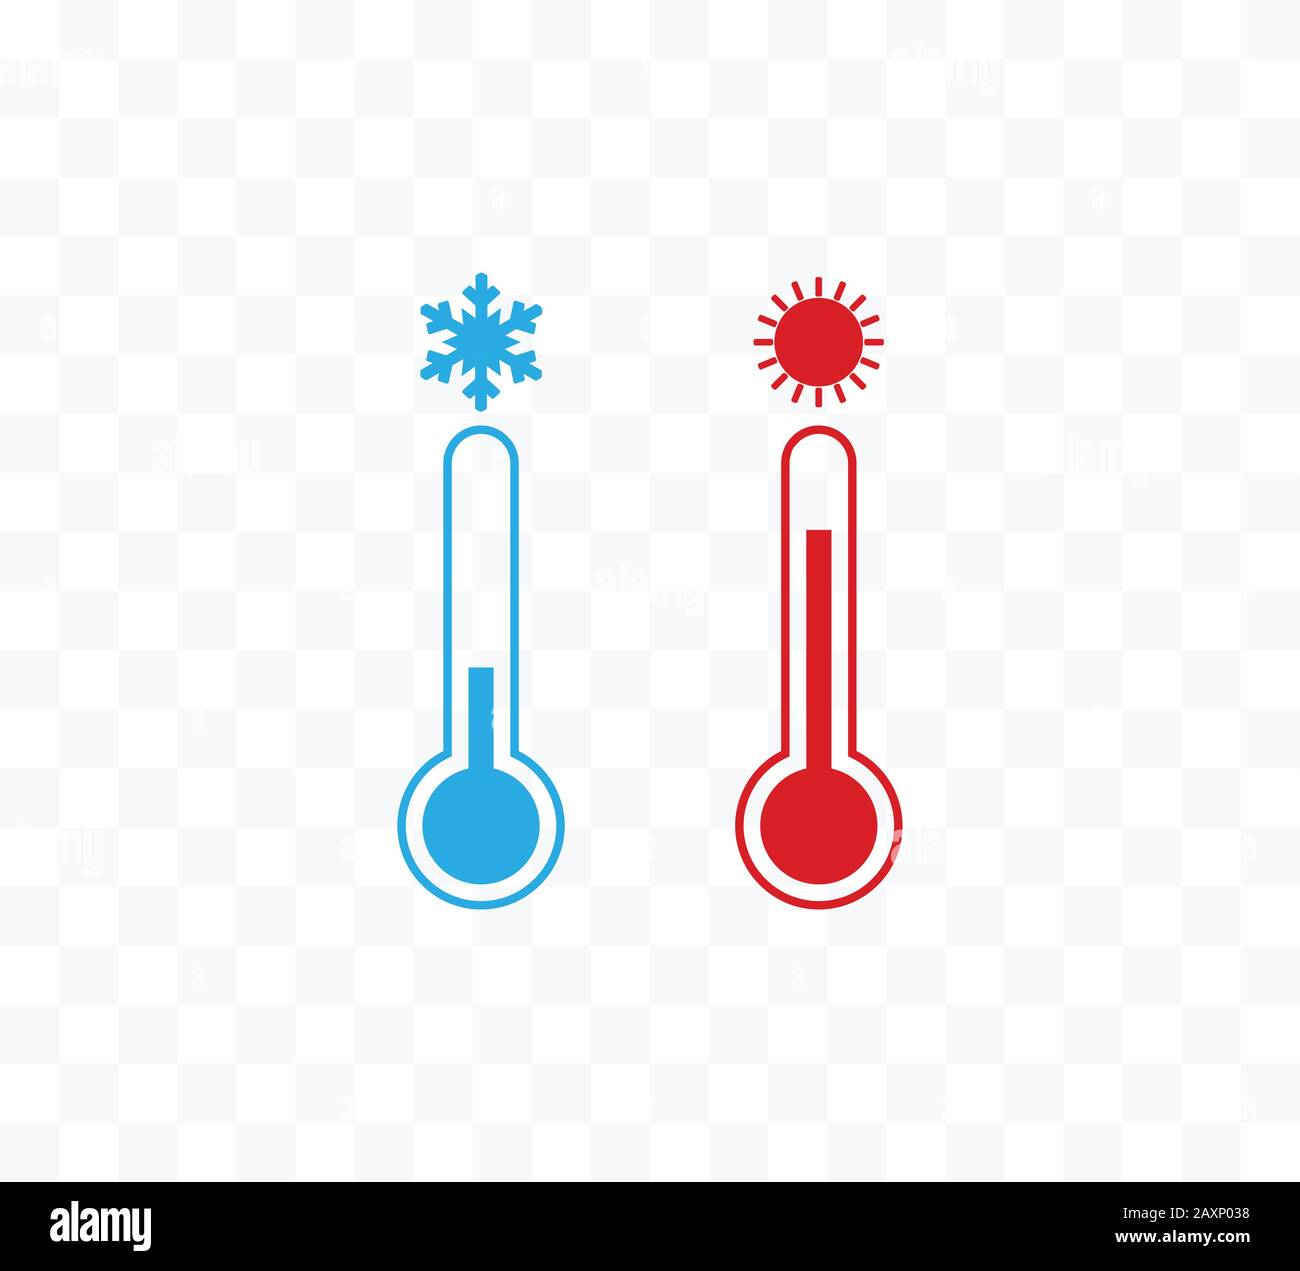 Symbol für heiße und kalte Temperatur. Vektorgrafiken, flaches Design. Stock Vektor